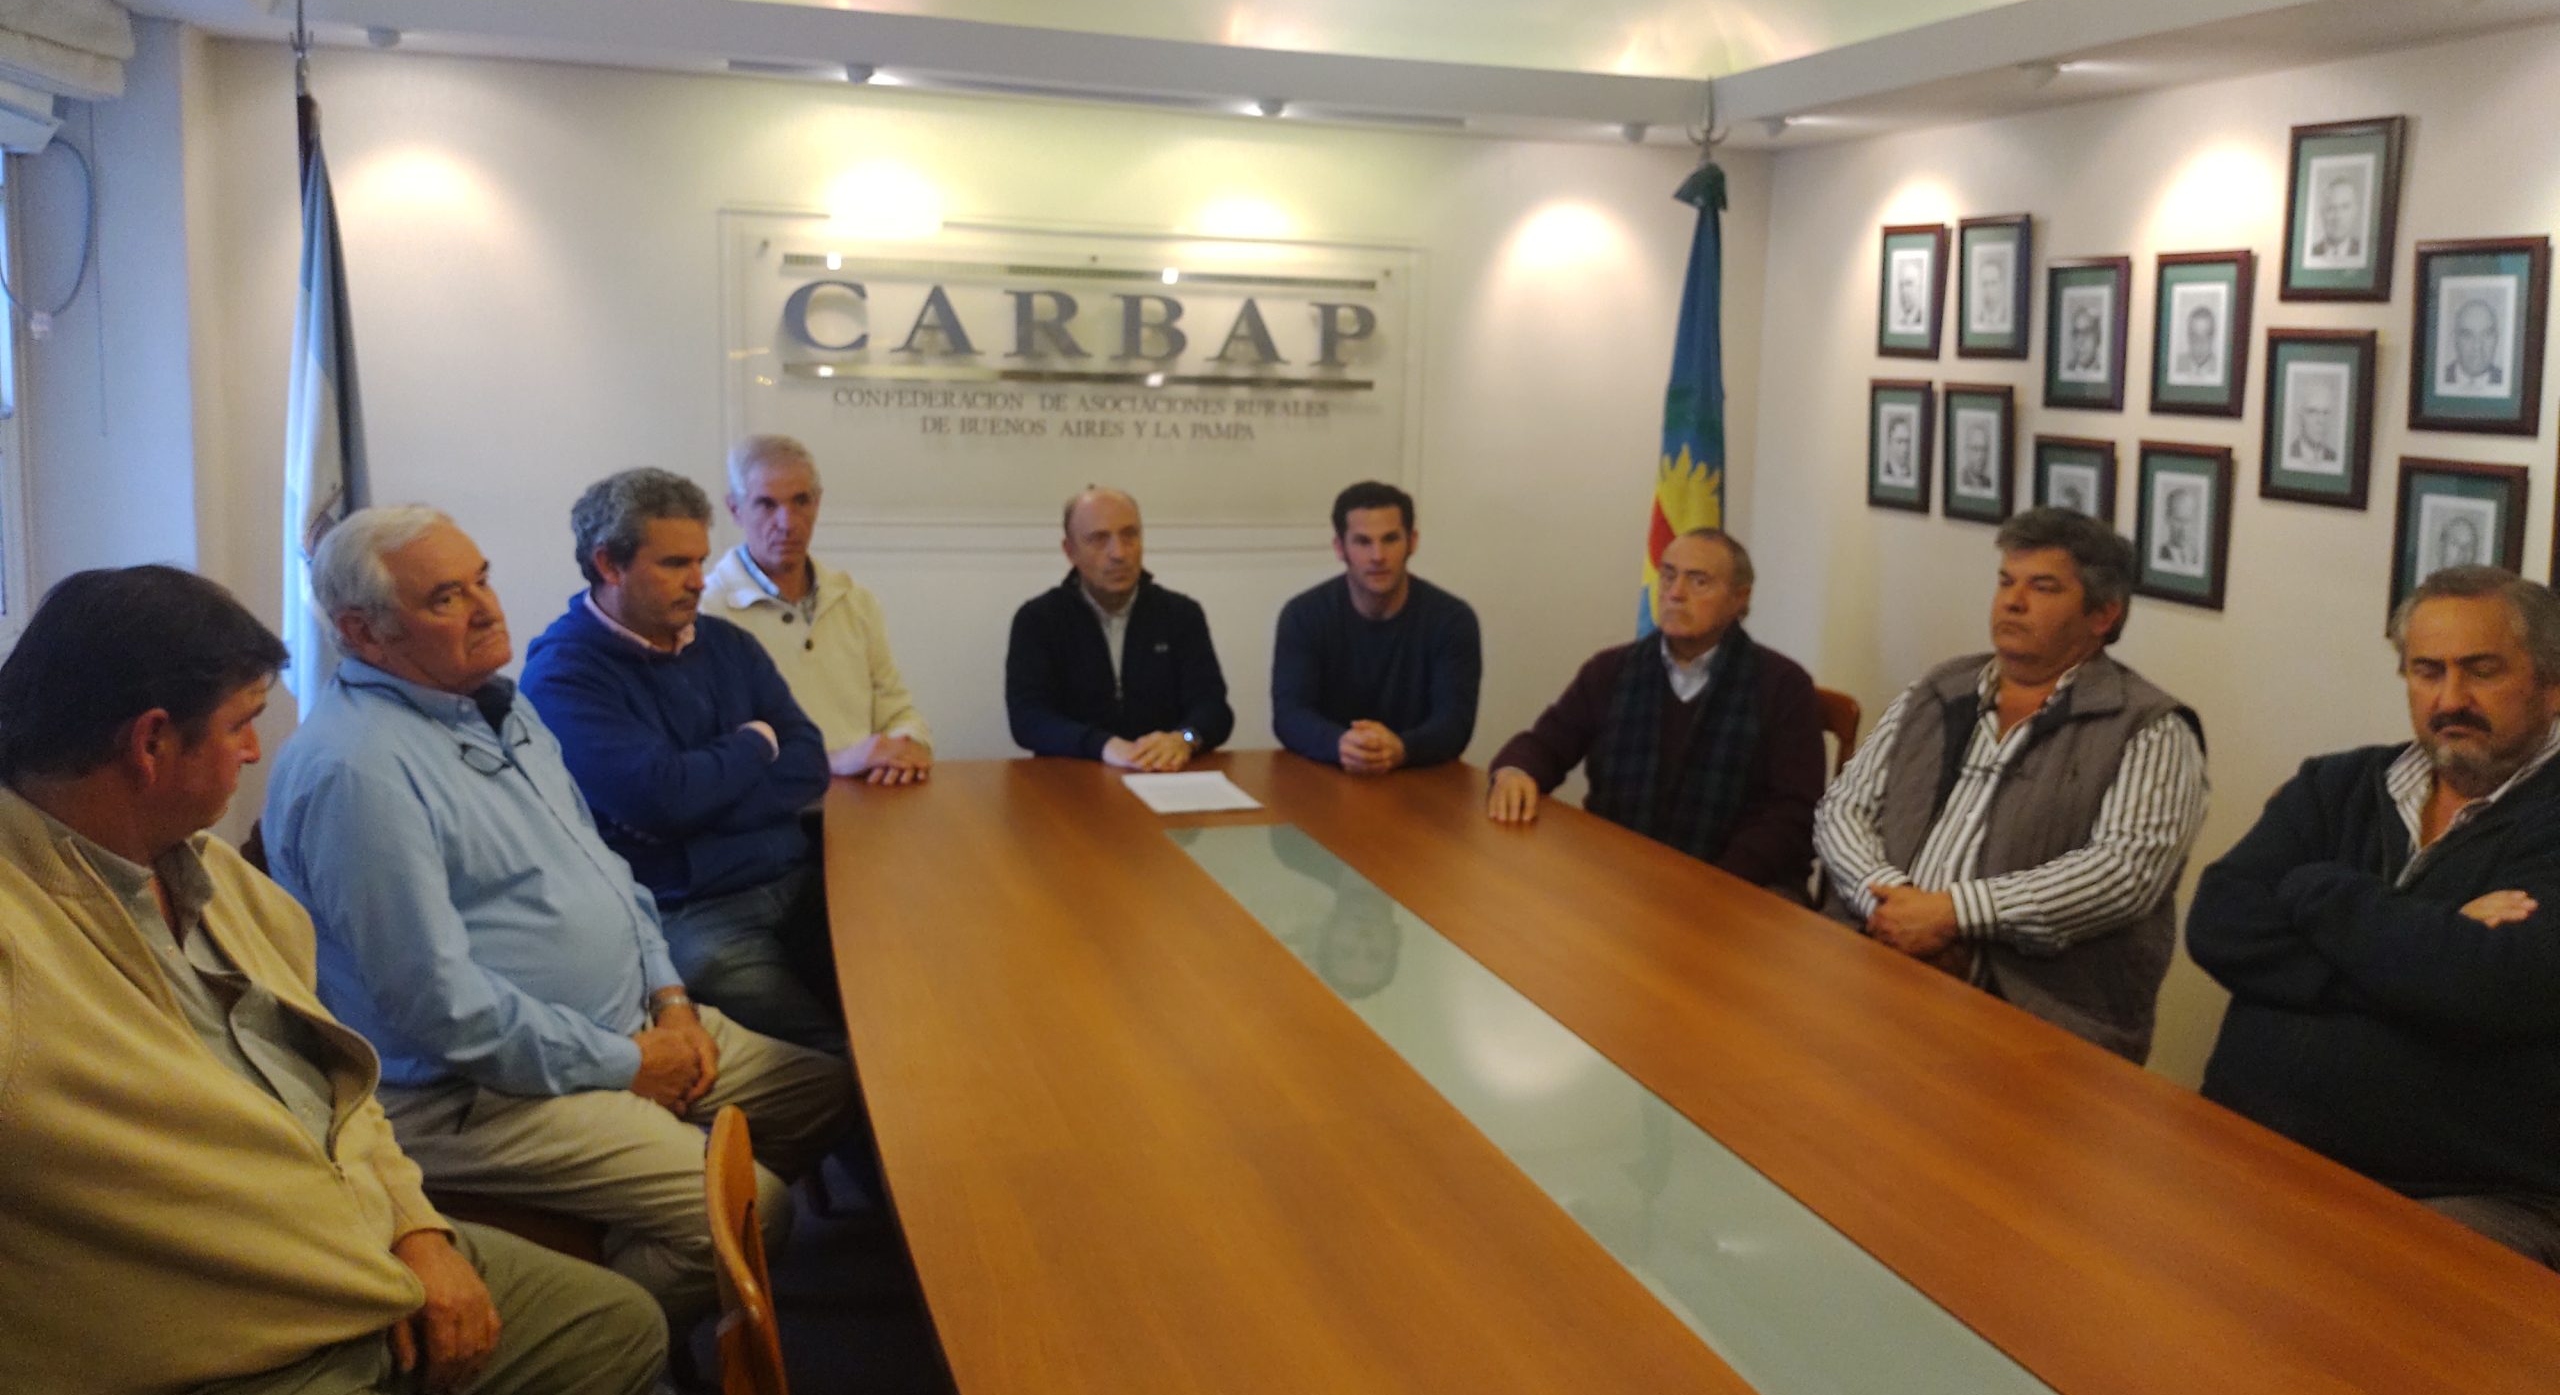 Carbap: Una patria empobrecida (por medidas de corte fiscalista y oportunistas)